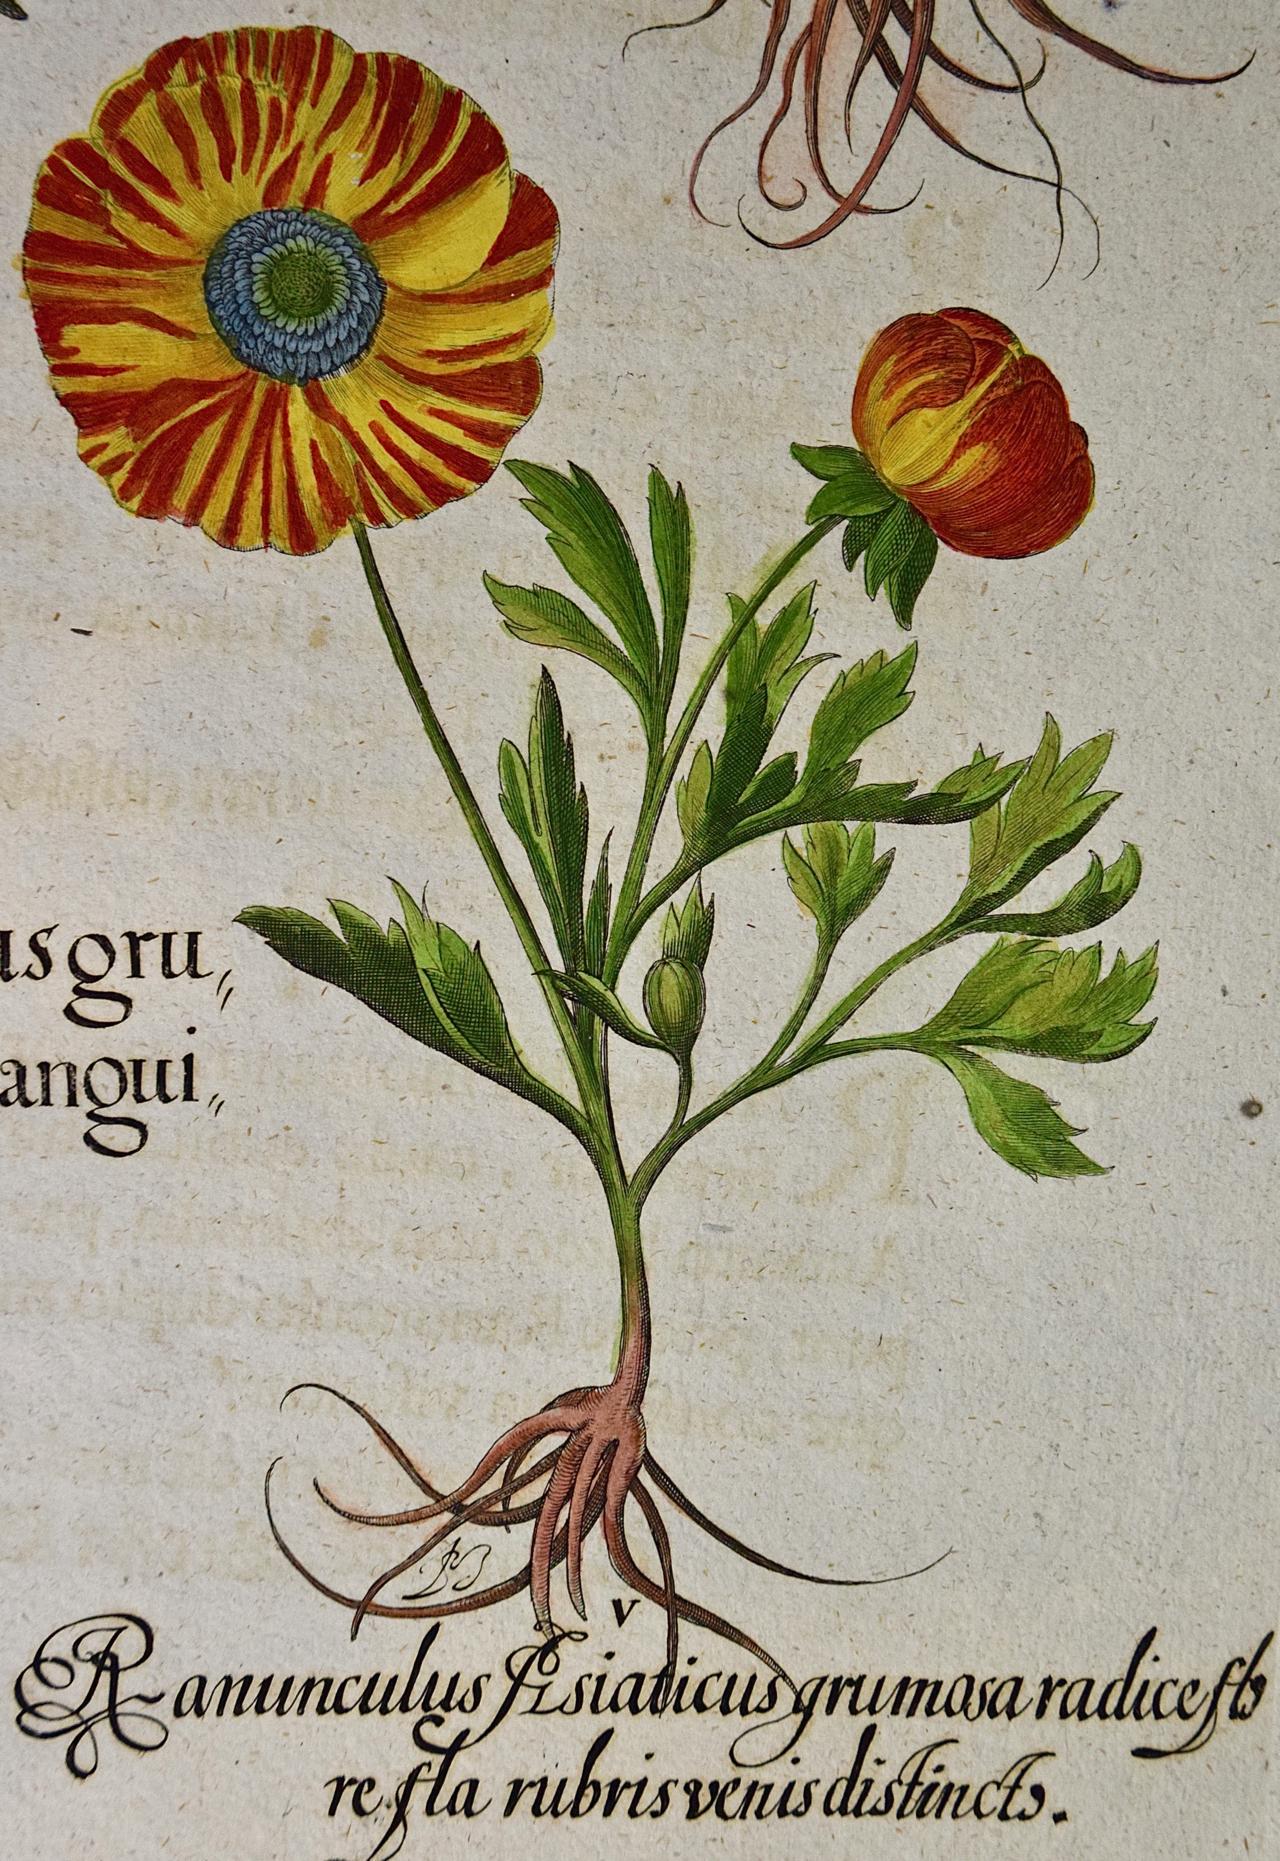 Il s'agit d'une gravure sur cuivre colorée à la main représentant des fleurs de renoncule (renoncule de Perse), tirée de l'ouvrage de référence de Basilius Besler, Hortus Eystettensis (Jardin d'Eichstatt), publié pour la première fois en 1613 à